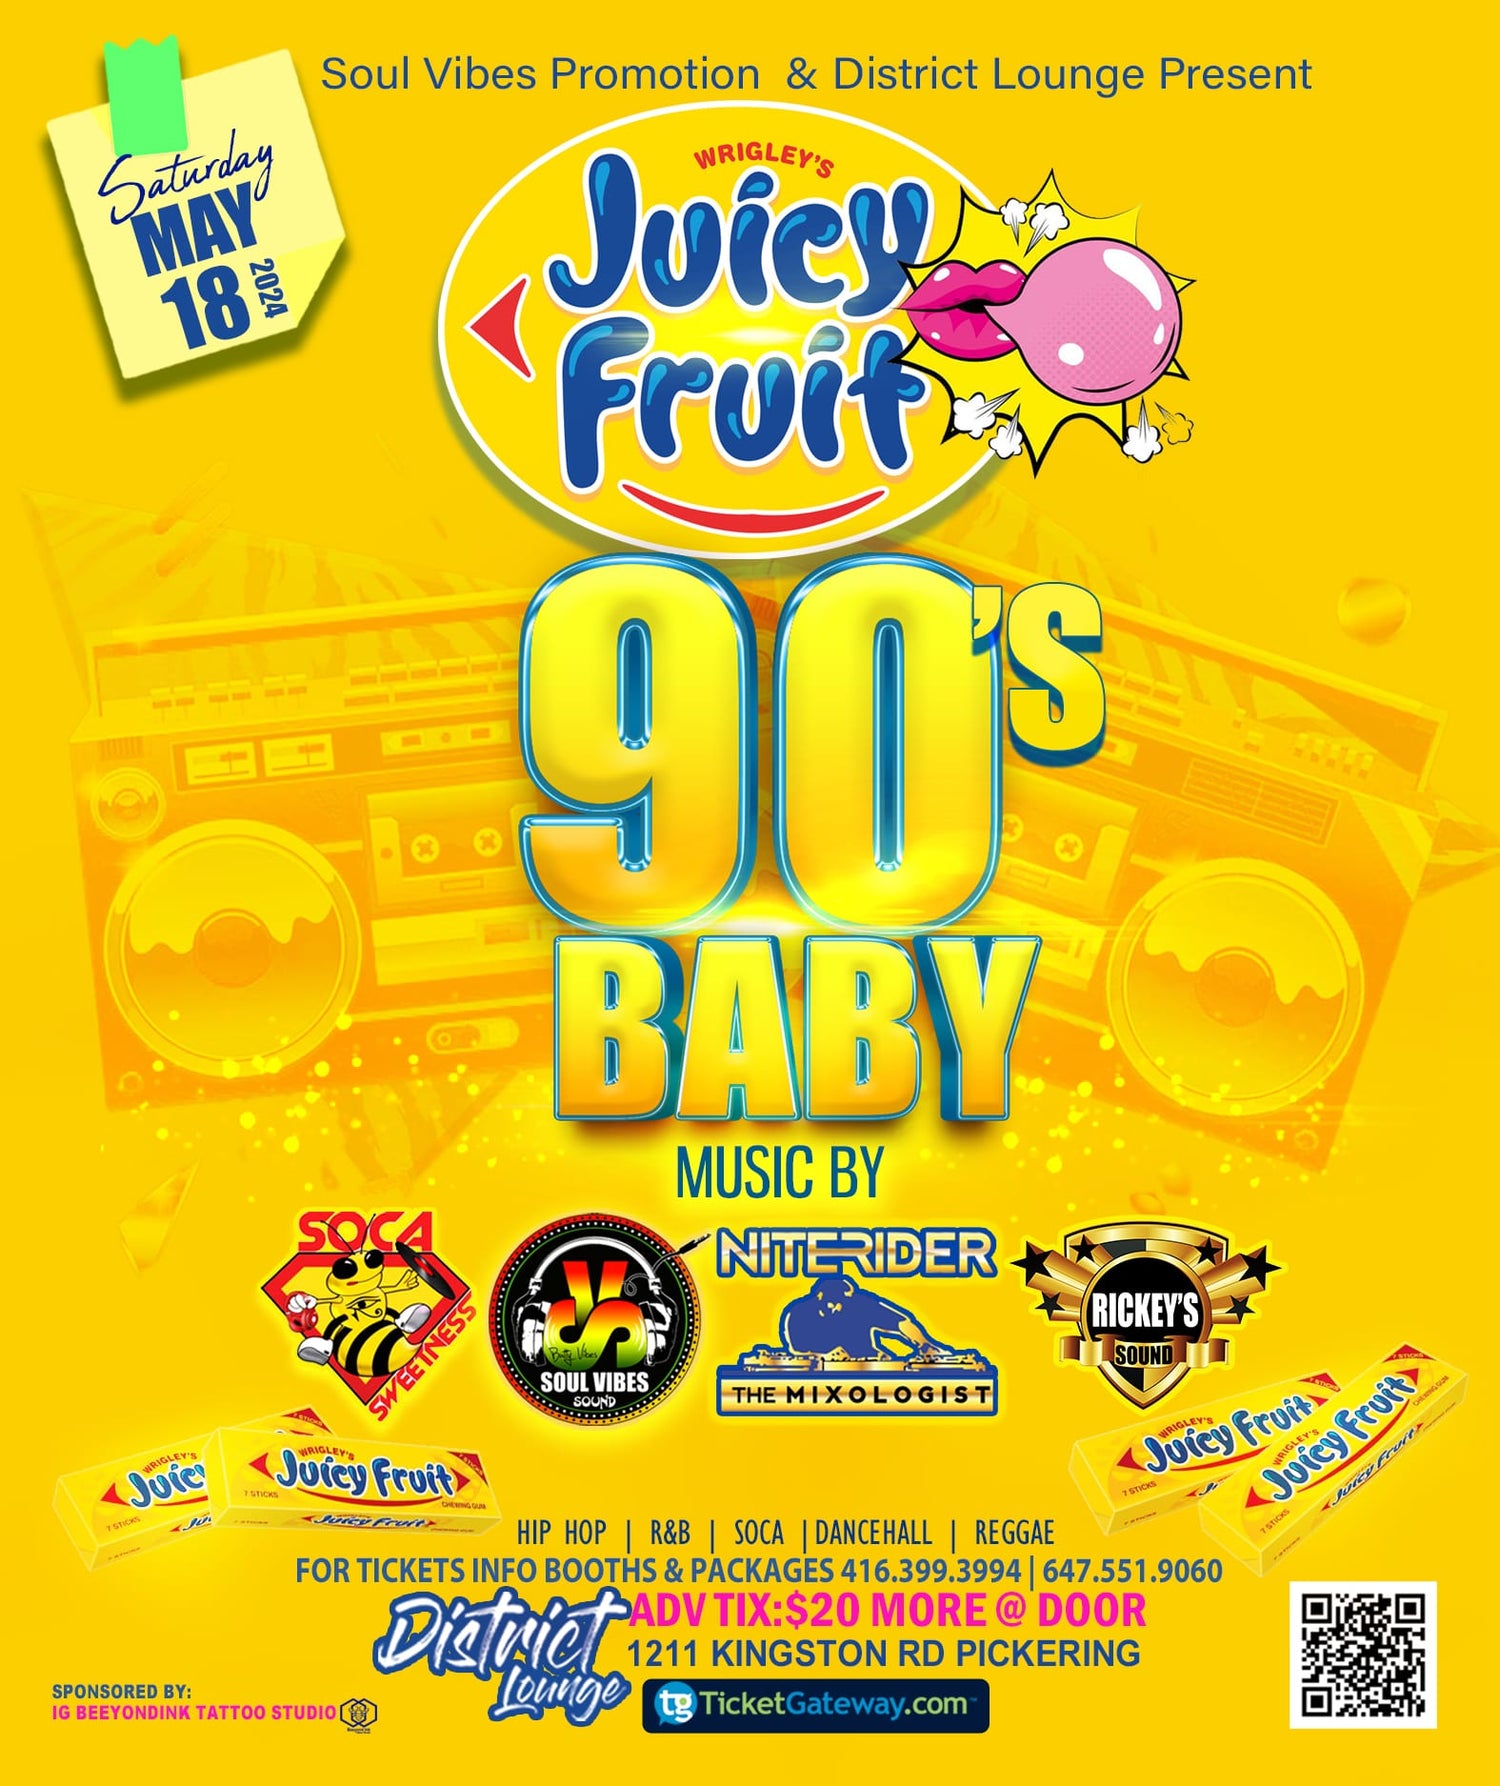 90s baby juicy fruit edition